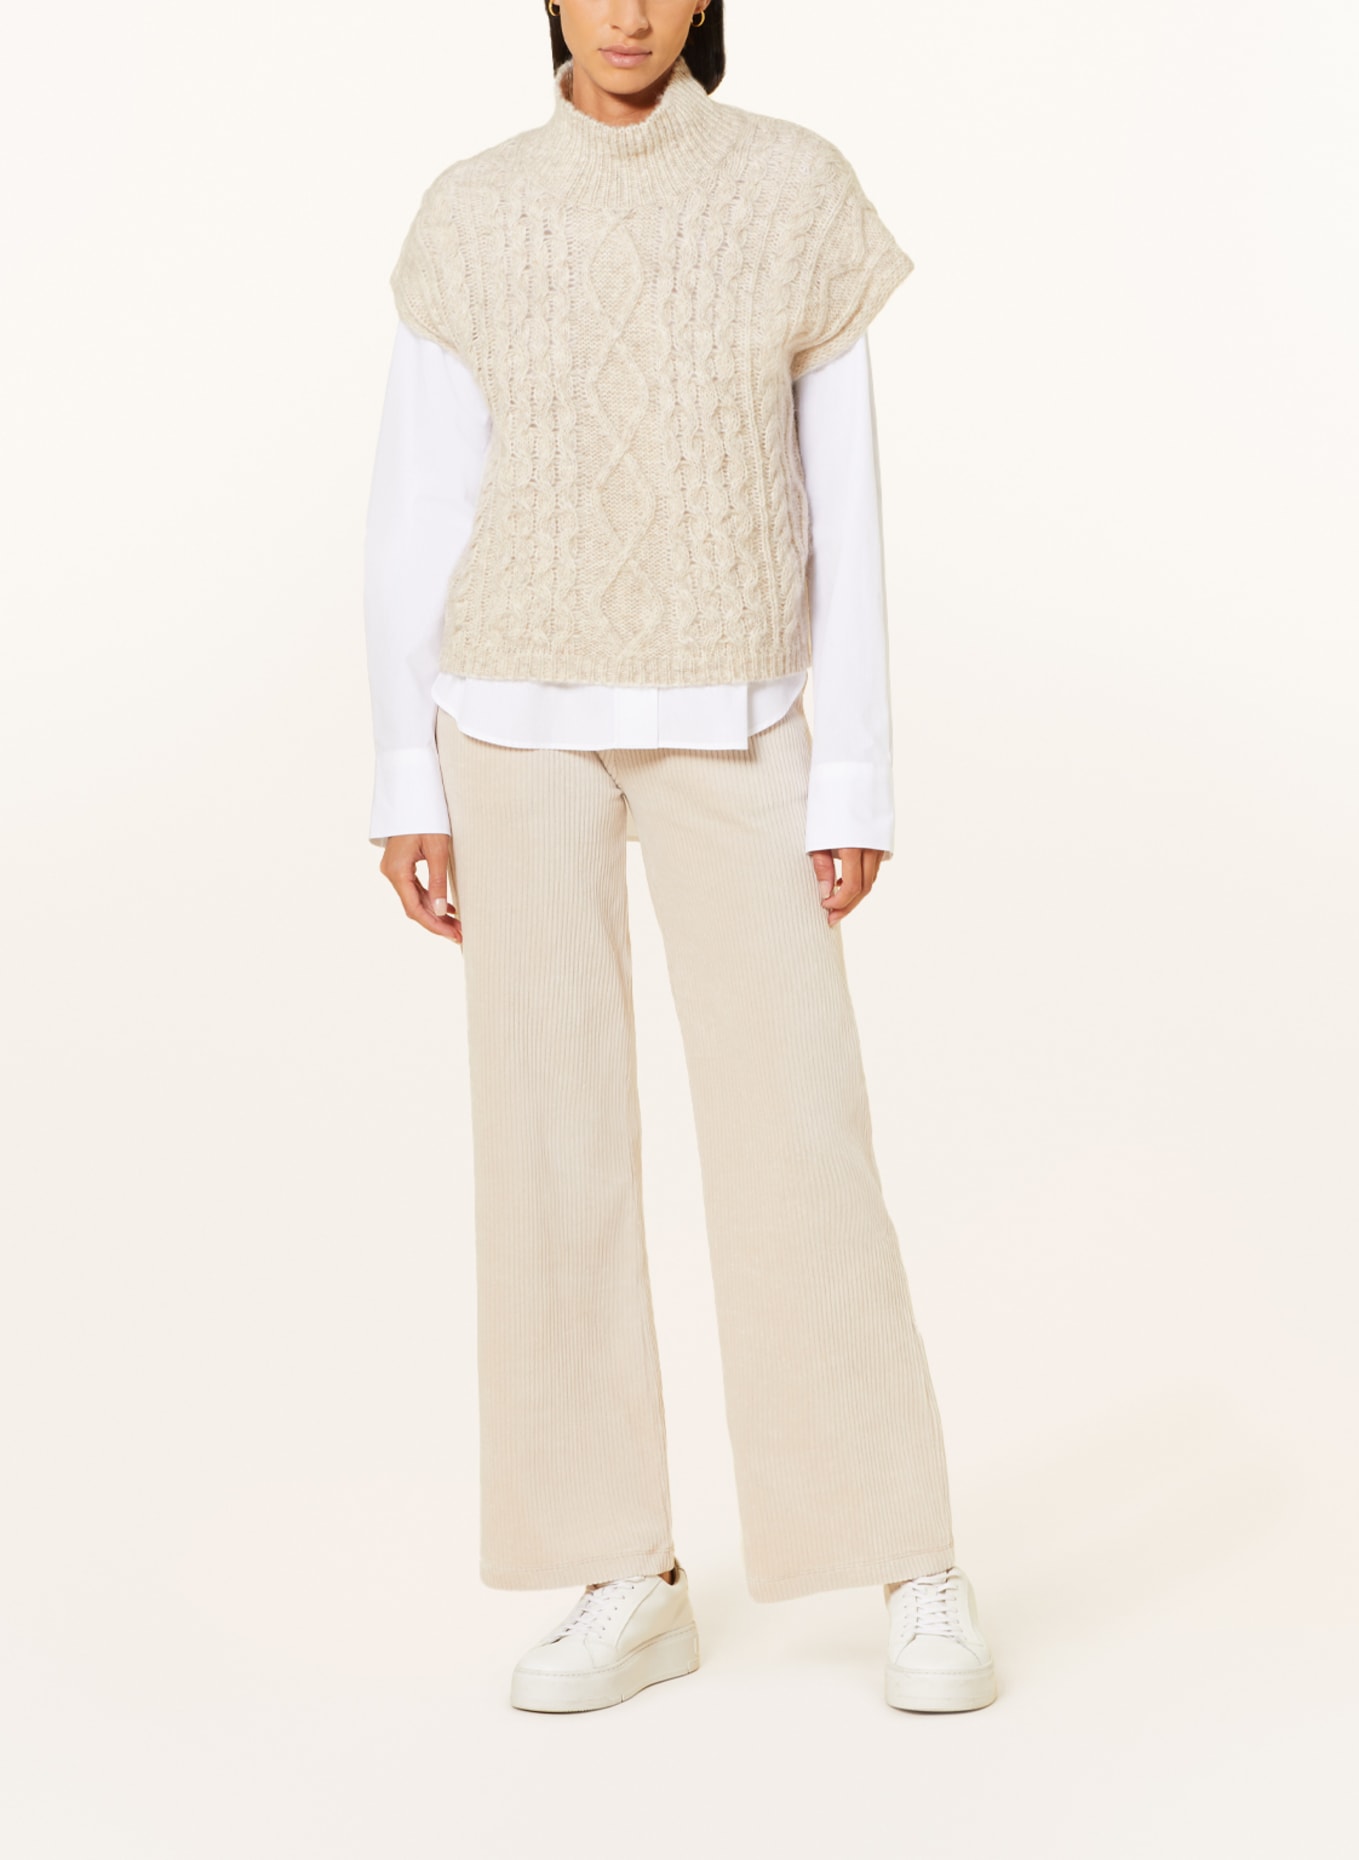 MRS & HUGS Sweater vest, Color: CREAM (Image 2)